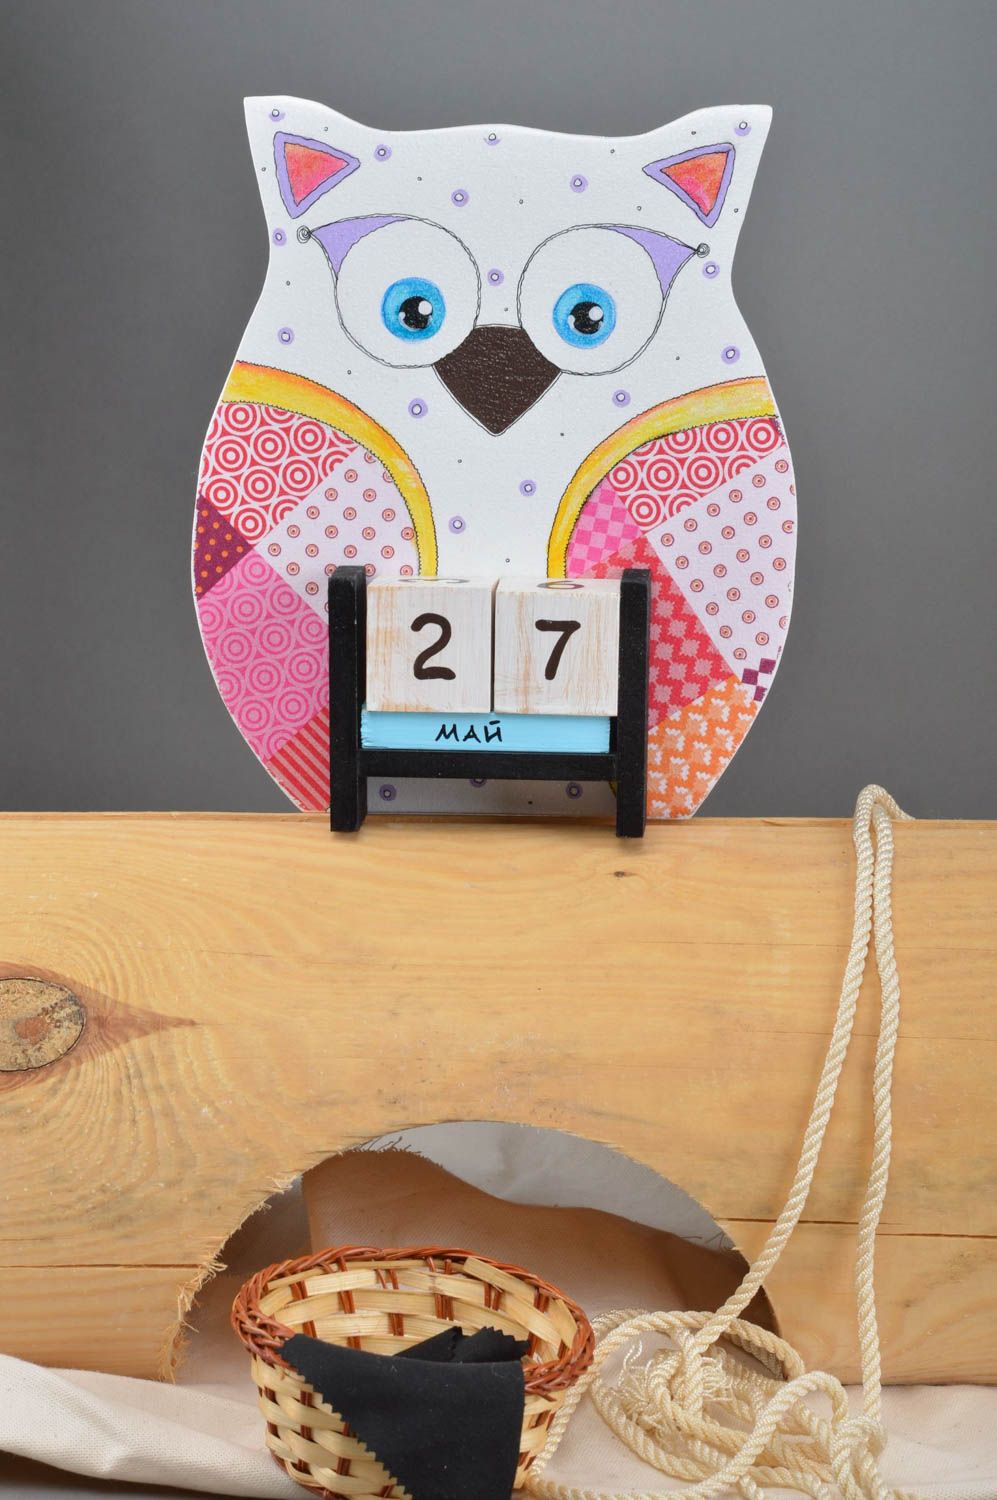 Календарь в виде совы небольшой цветной из дерева красивый декупаж ручная работа фото 1